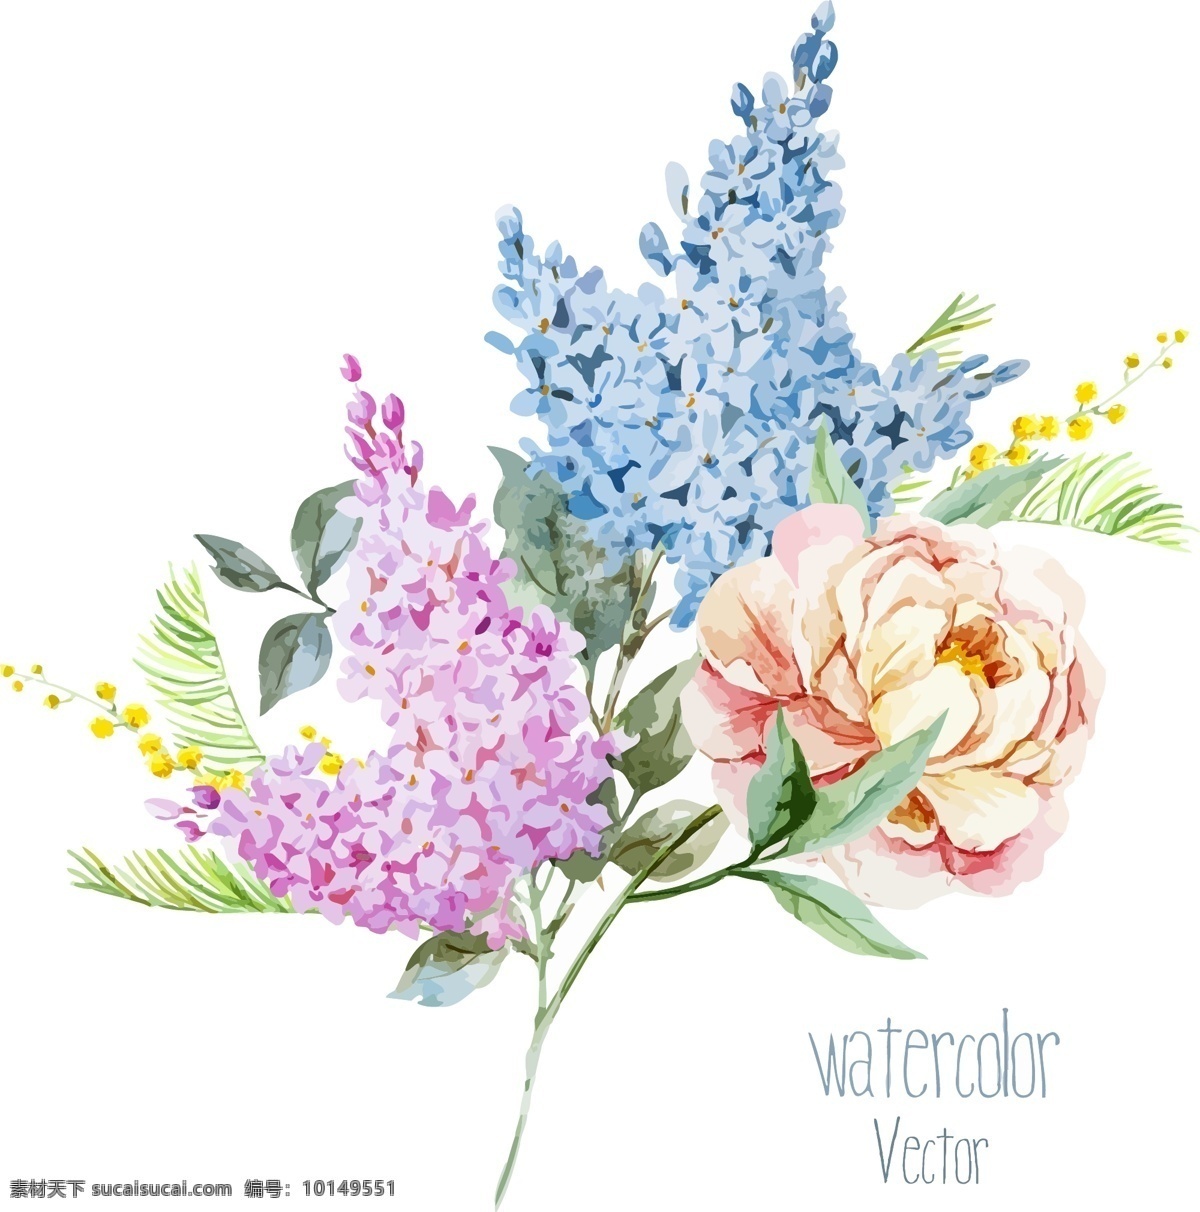 唯美 时尚 水彩 绘 花卉 植物 插画 花朵 手绘 水彩绘